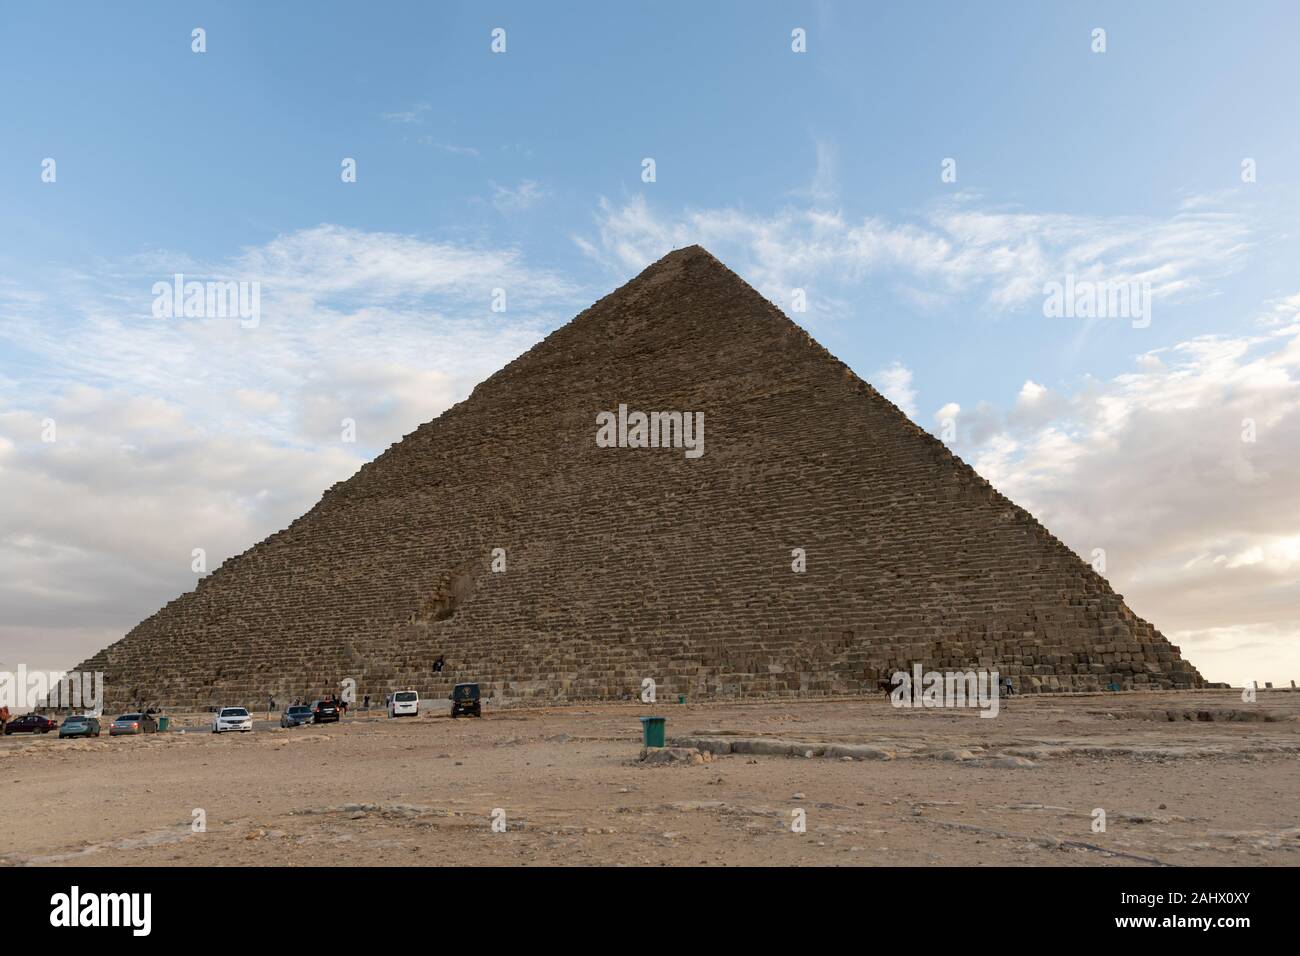 La grande pyramide de Gizeh (également connu sous le nom de la pyramide de Chéops et la pyramide de Kheops) est la plus ancienne et la plus grande des trois pyramides de Gizeh en py Banque D'Images